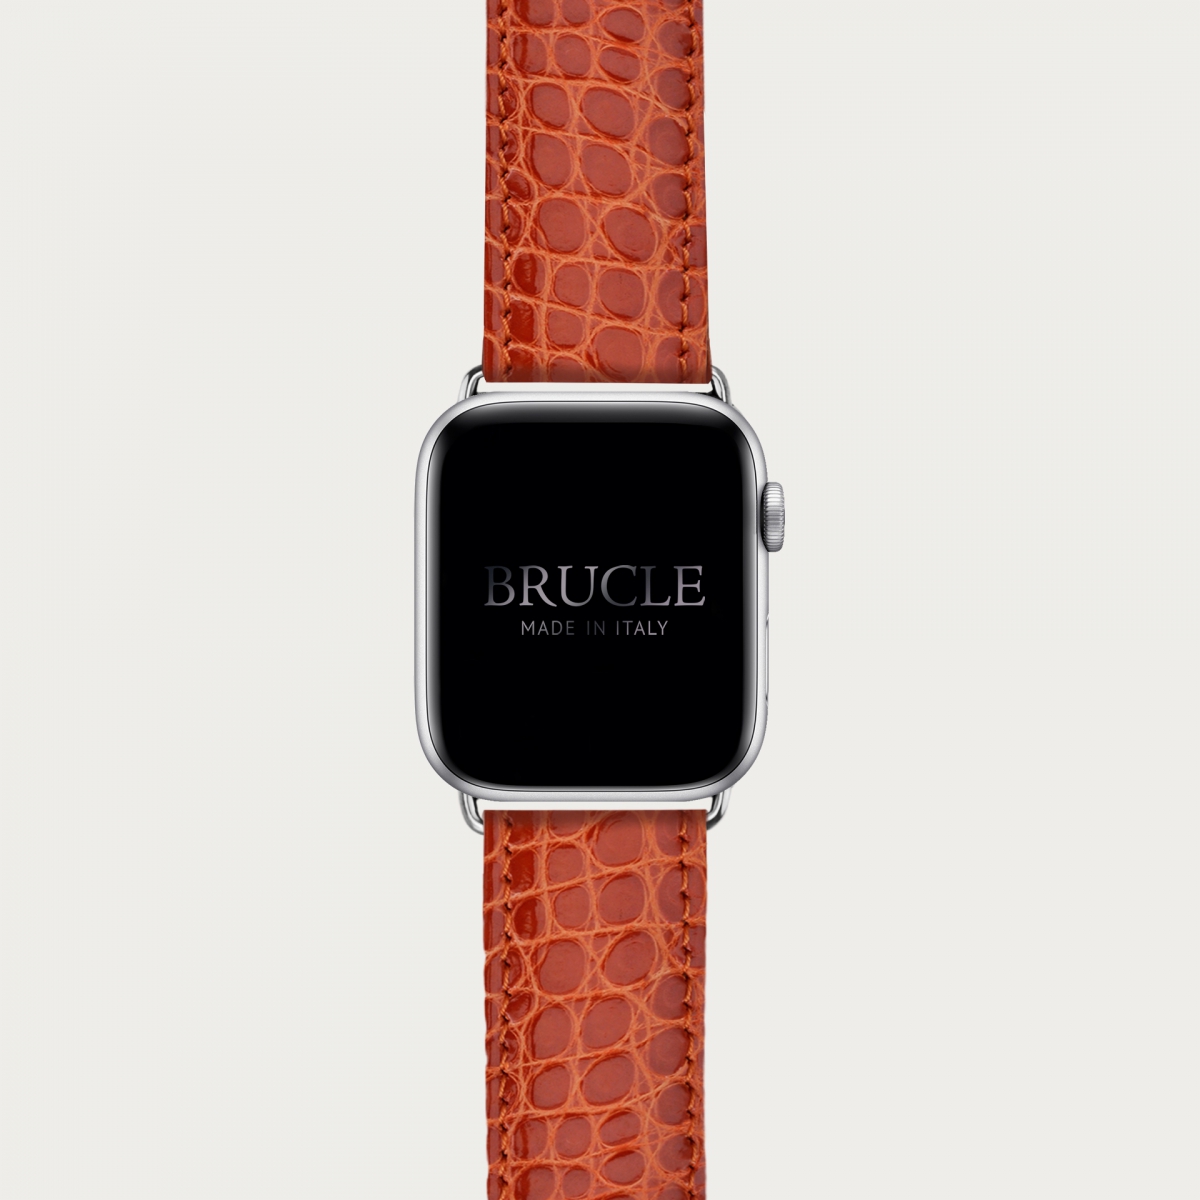 Brucle cinturino rosa in vera pelle alligatore per orologio, Compatibile con Apple Watch / Galaxy Samsung